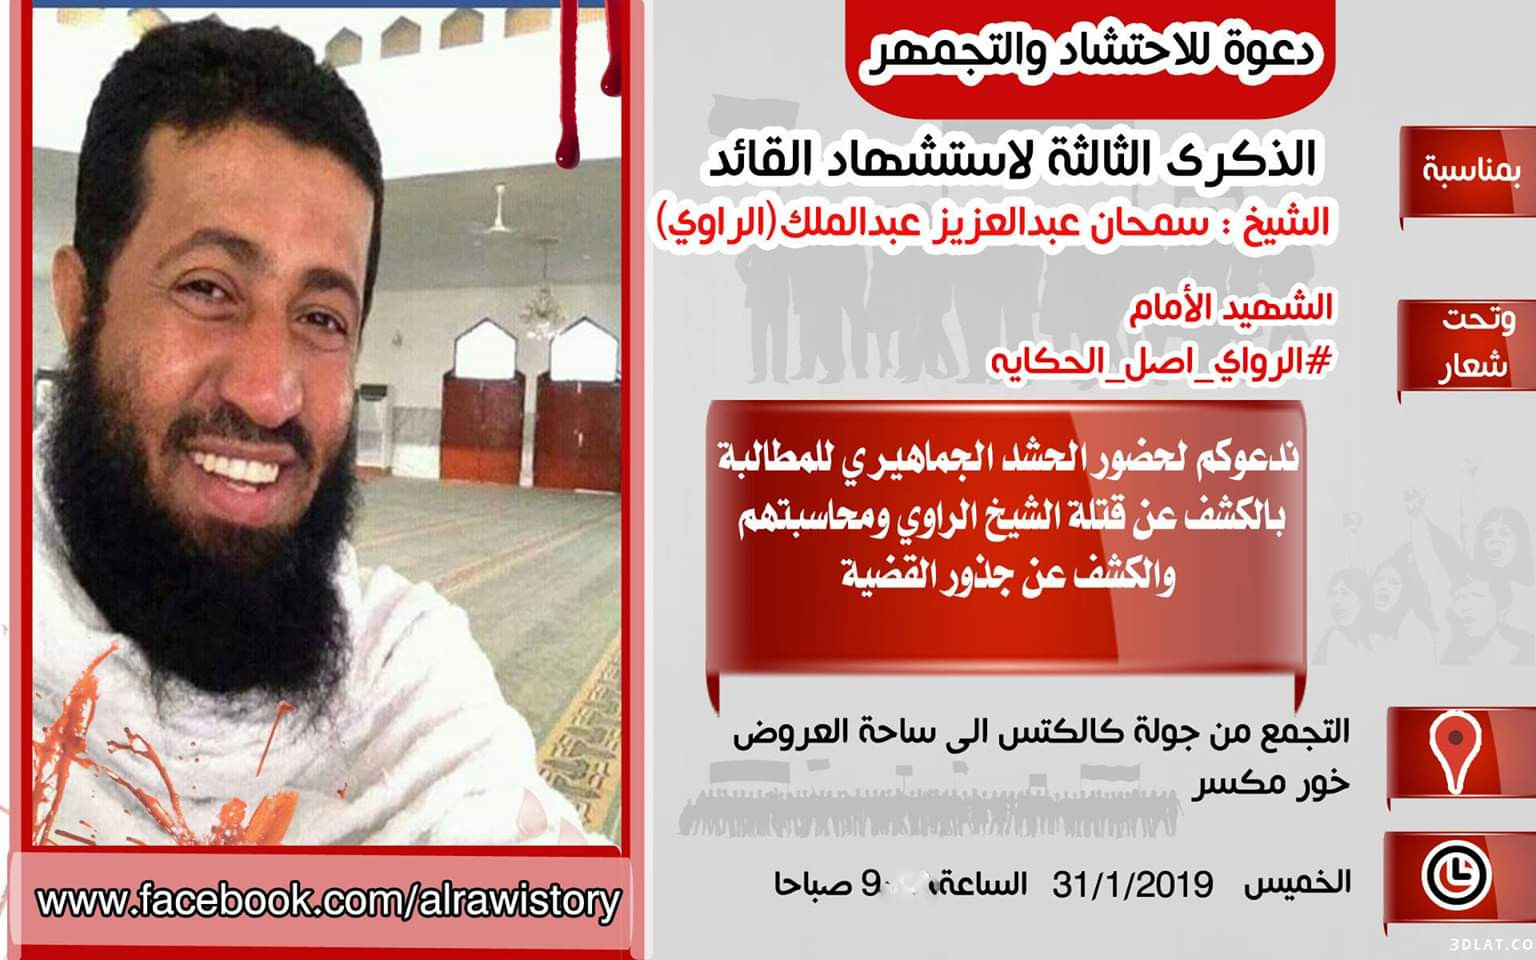 وقفة احتجاجية للمطالبة بالقبض على هاني بن بريك بتهمة اغتيال الشيخ راوي العريقي 